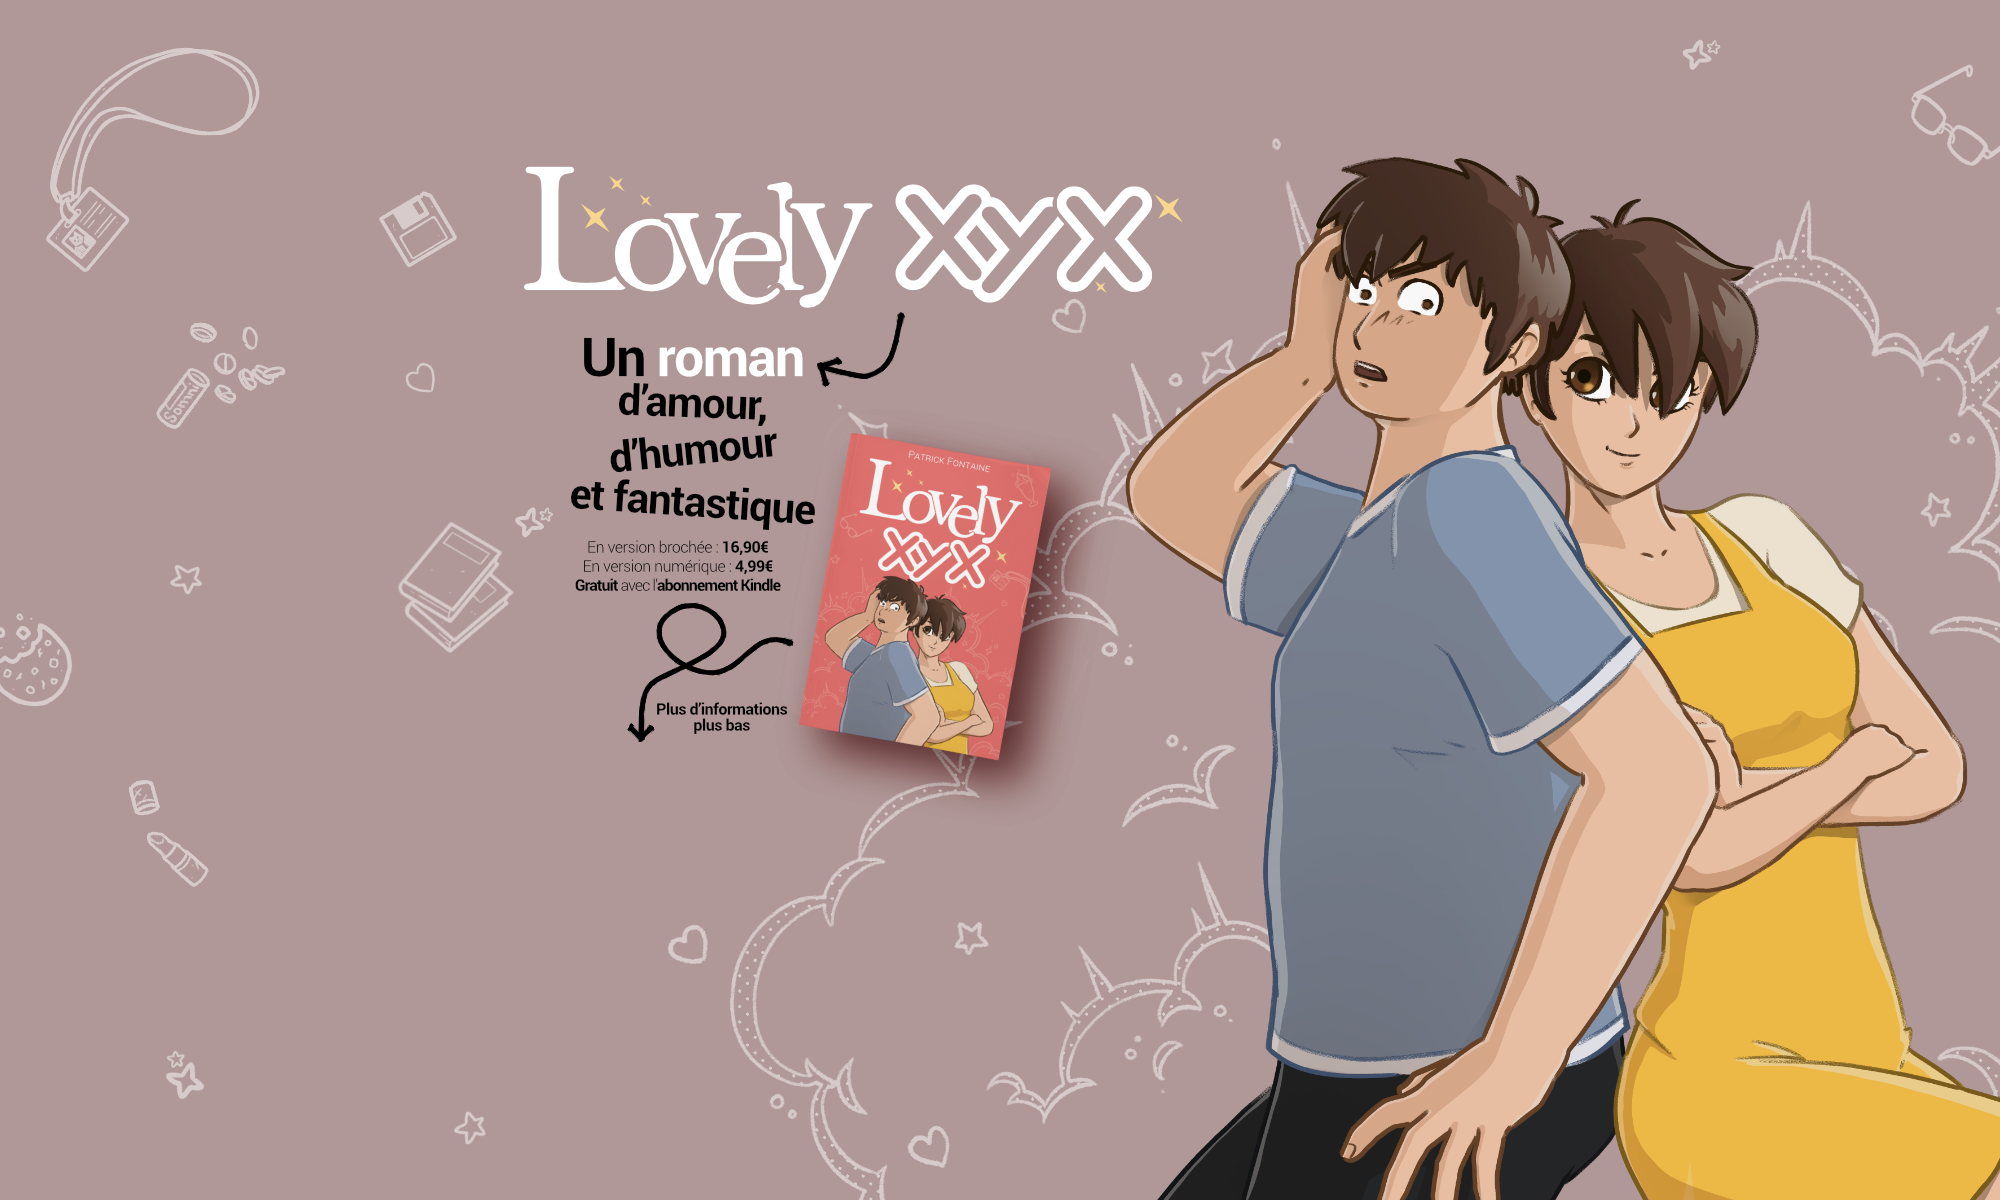 Lovely XYX, un roman d'amour, d'humour et fantastique. Disponible en version brochée : 16,90€ en version numérique : 4,99€ gratuit avec l'abonnement kindle Plus d'informations plus bas